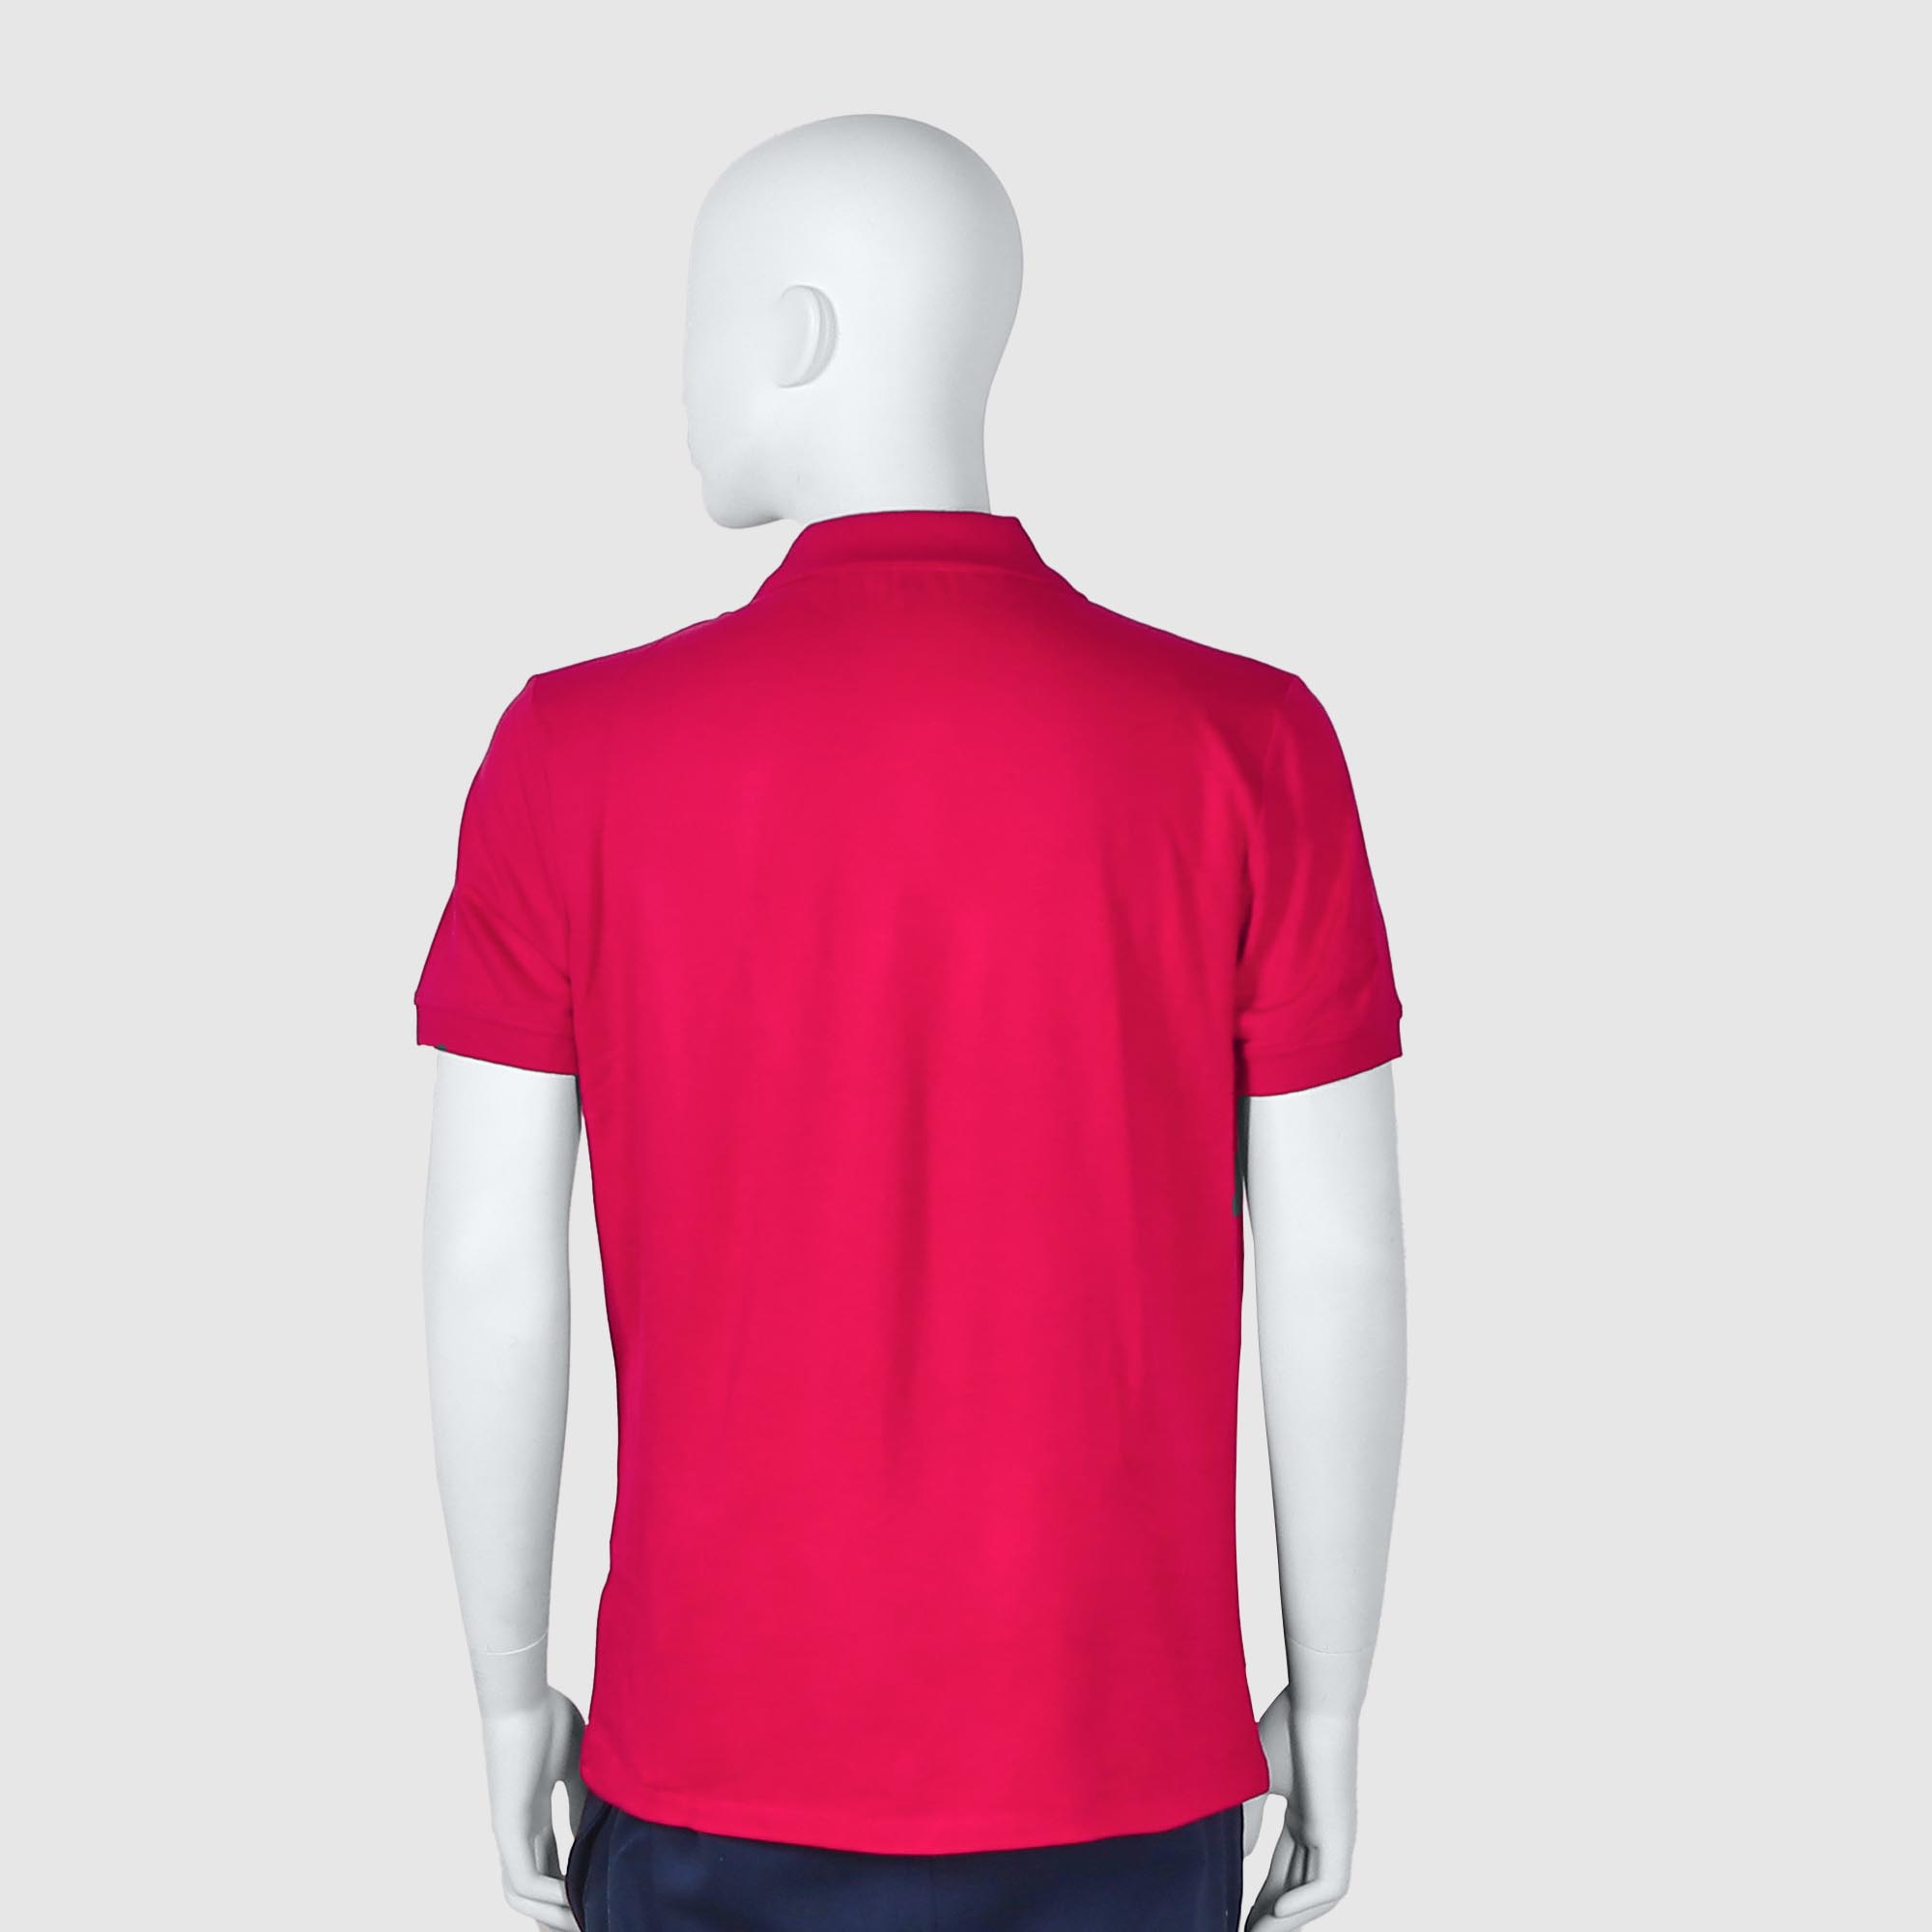 Мужская футболка-поло Diva Teks красная (DTD-08), цвет красный, размер 48-50 - фото 2